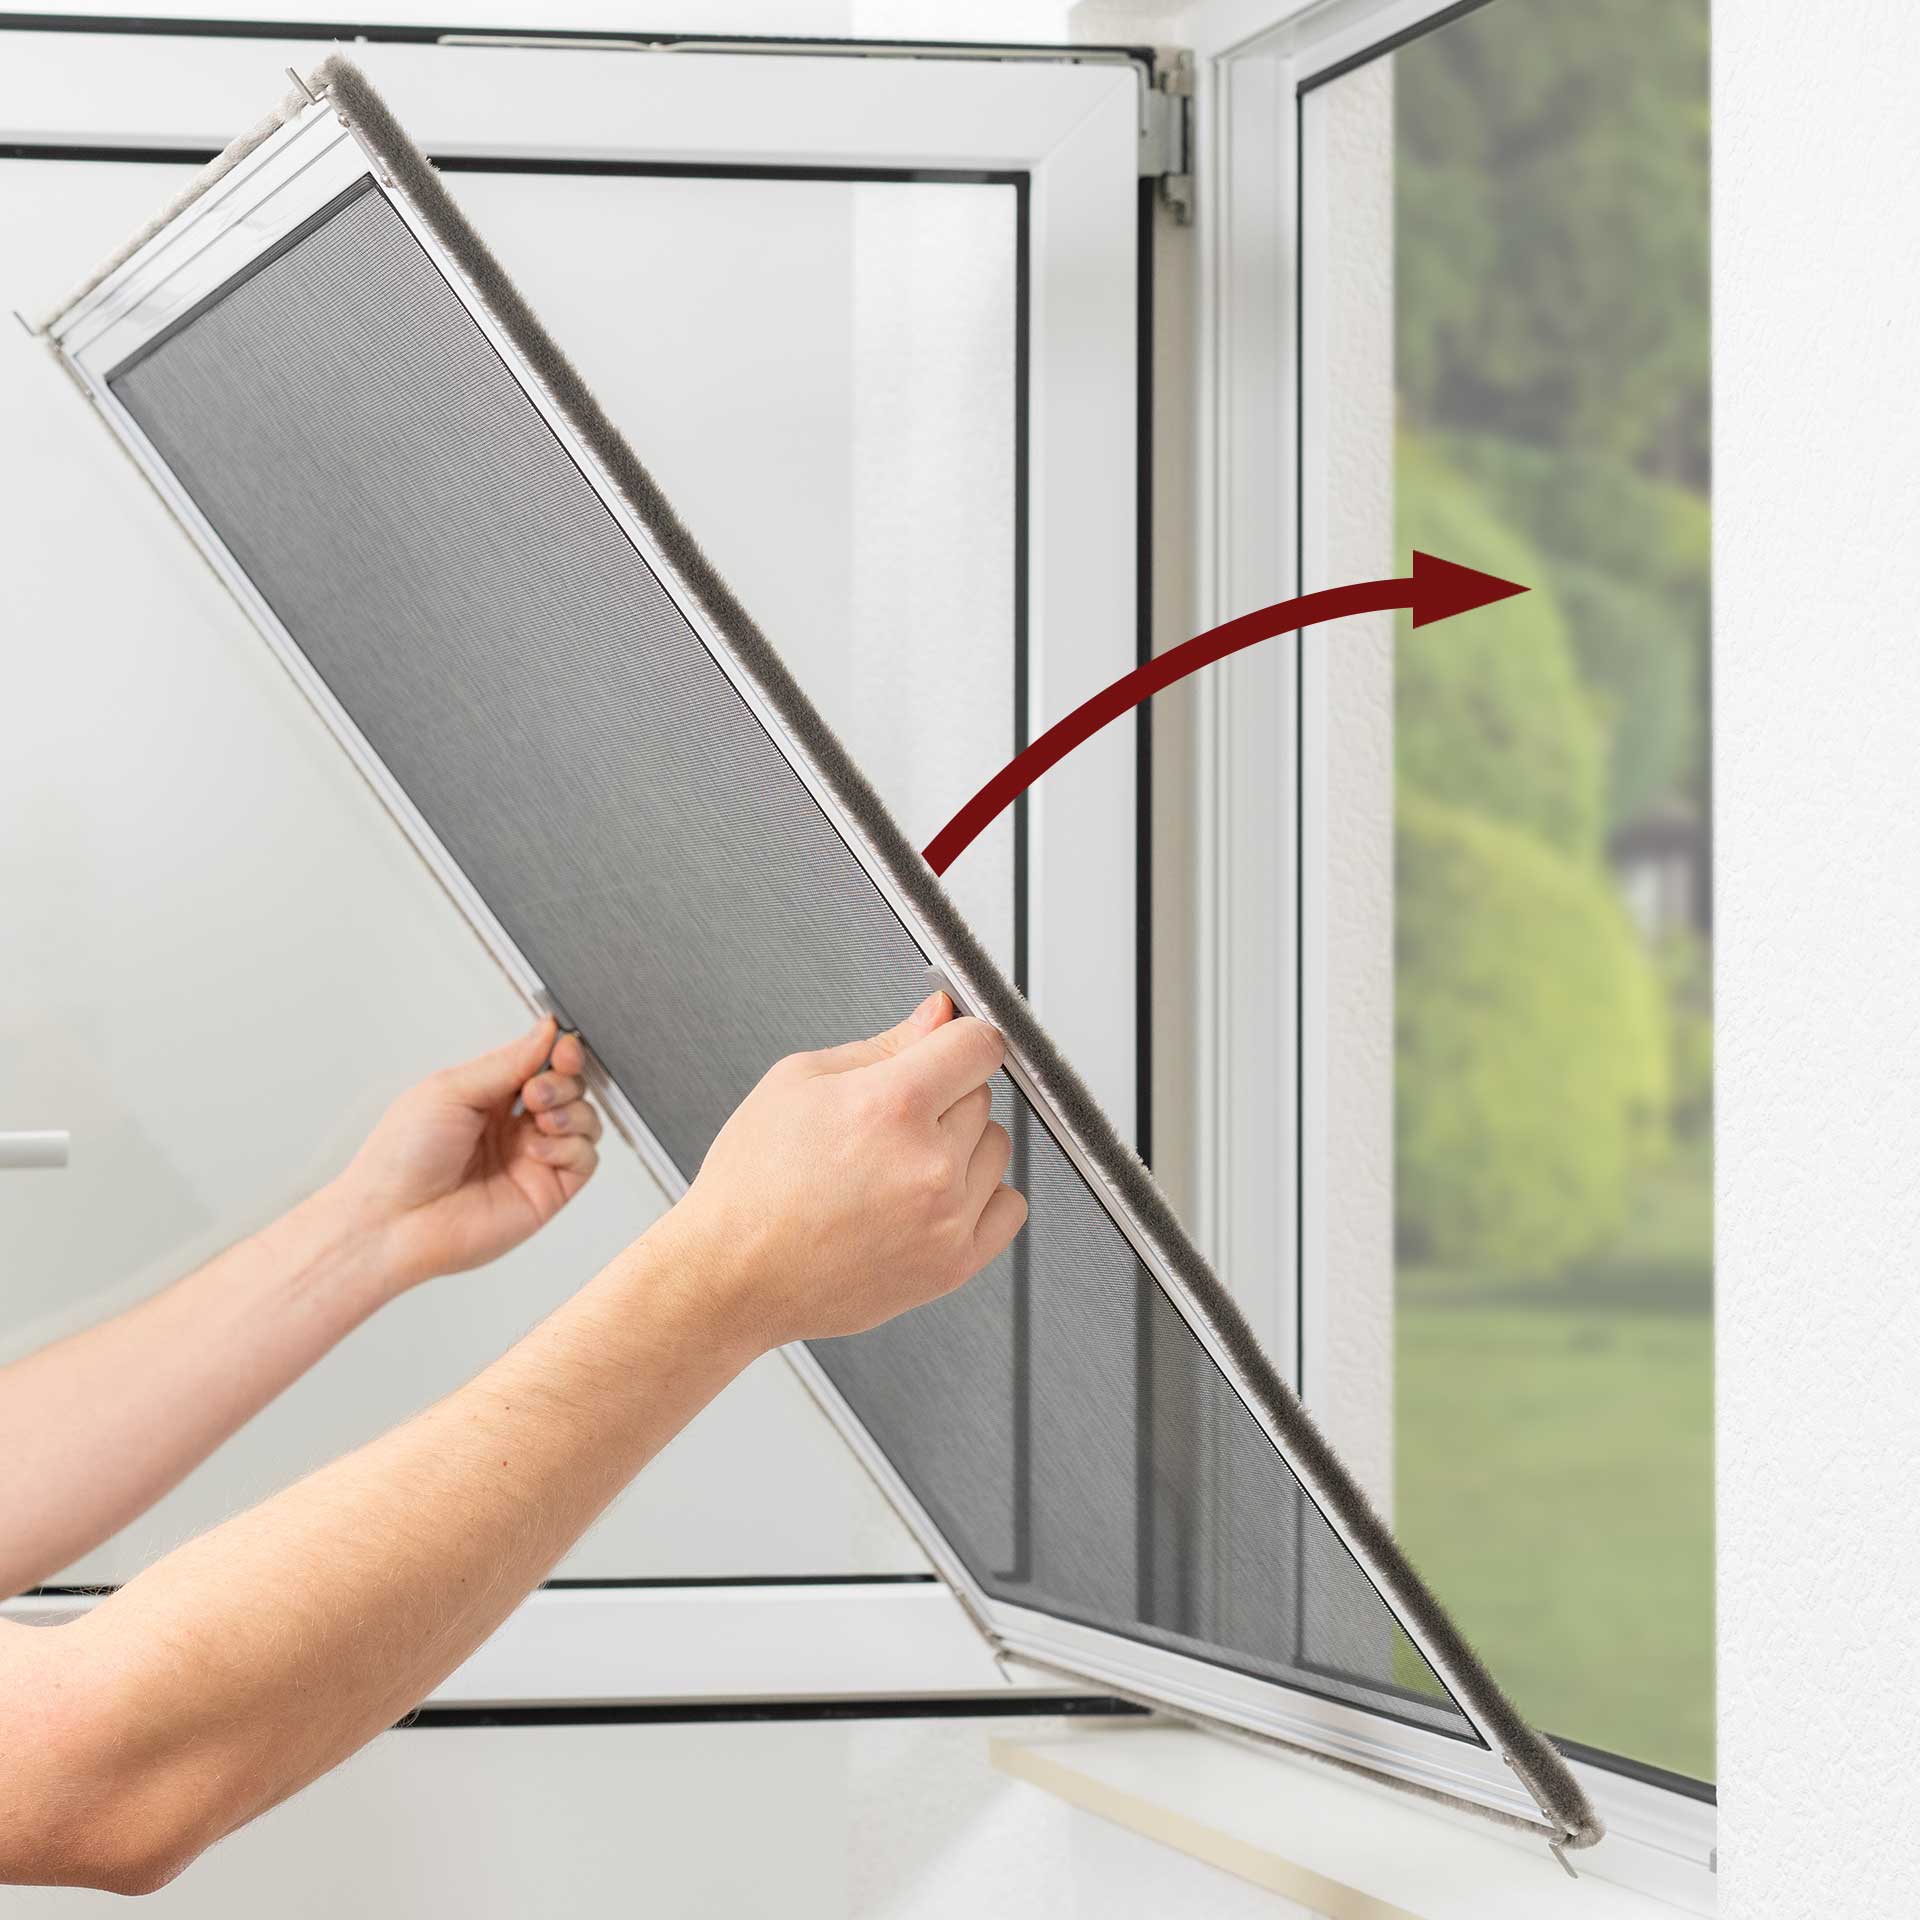 empasa Fliegengitter Fenster Magnet 'EASY' Insektenschutz Magnetfenster  flexibler Magnetrahmen mit umlaufendem selbstklebendem Magnetstreifen in  130 x